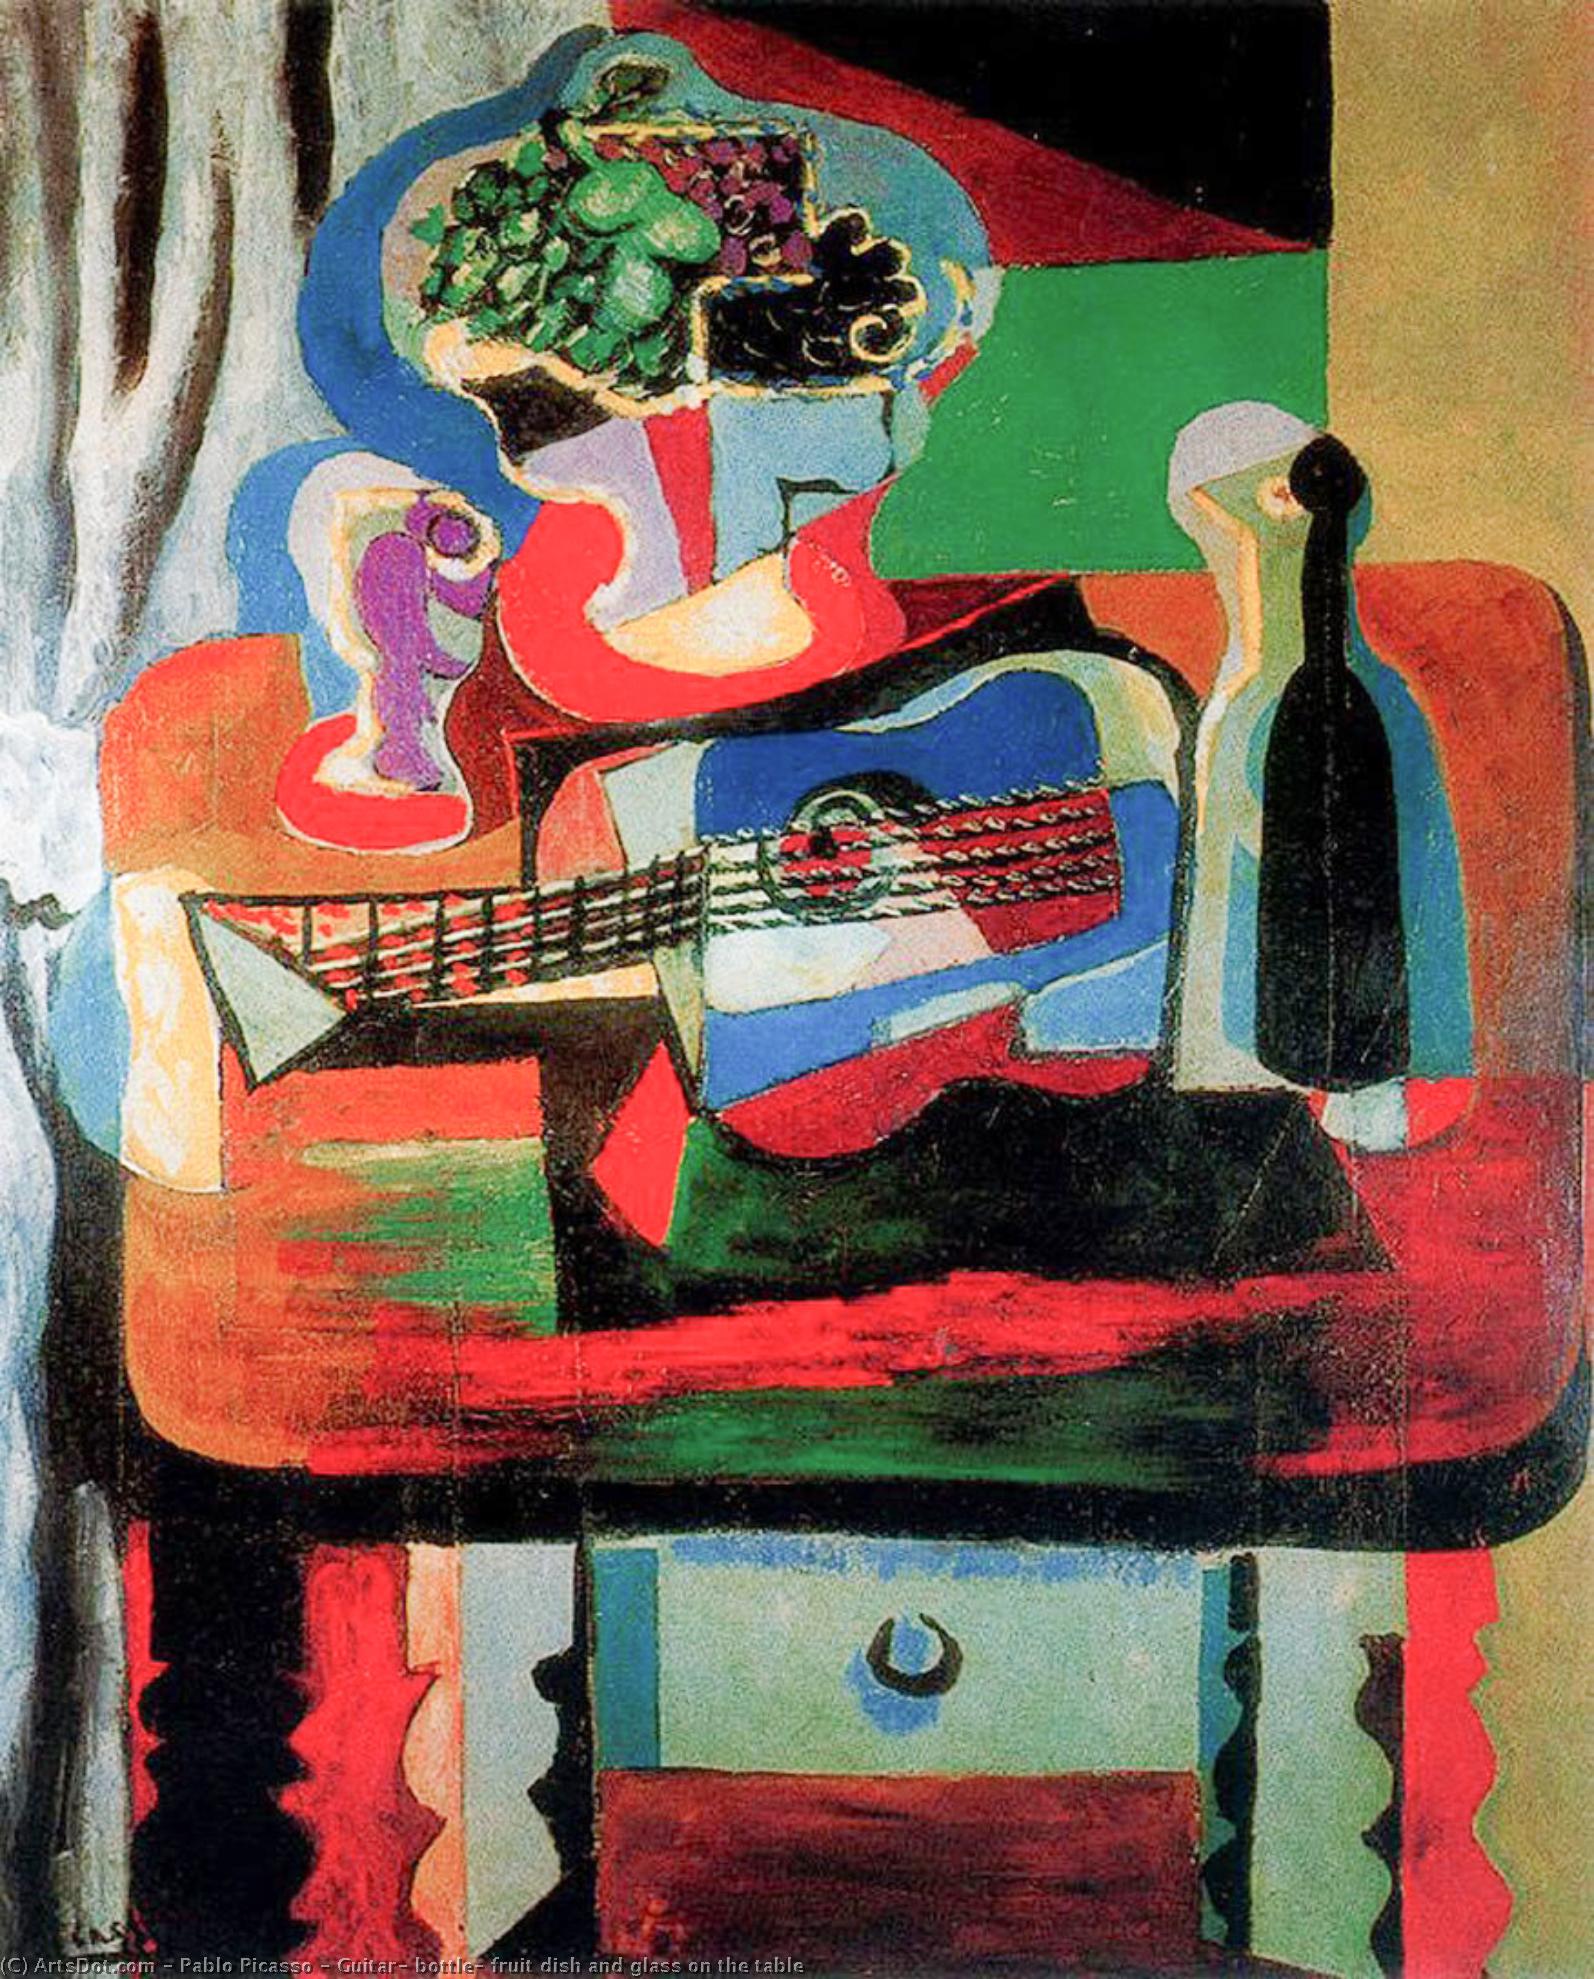 WikiOO.org - Enciklopedija dailės - Tapyba, meno kuriniai Pablo Picasso - Guitar, bottle, fruit dish and glass on the table